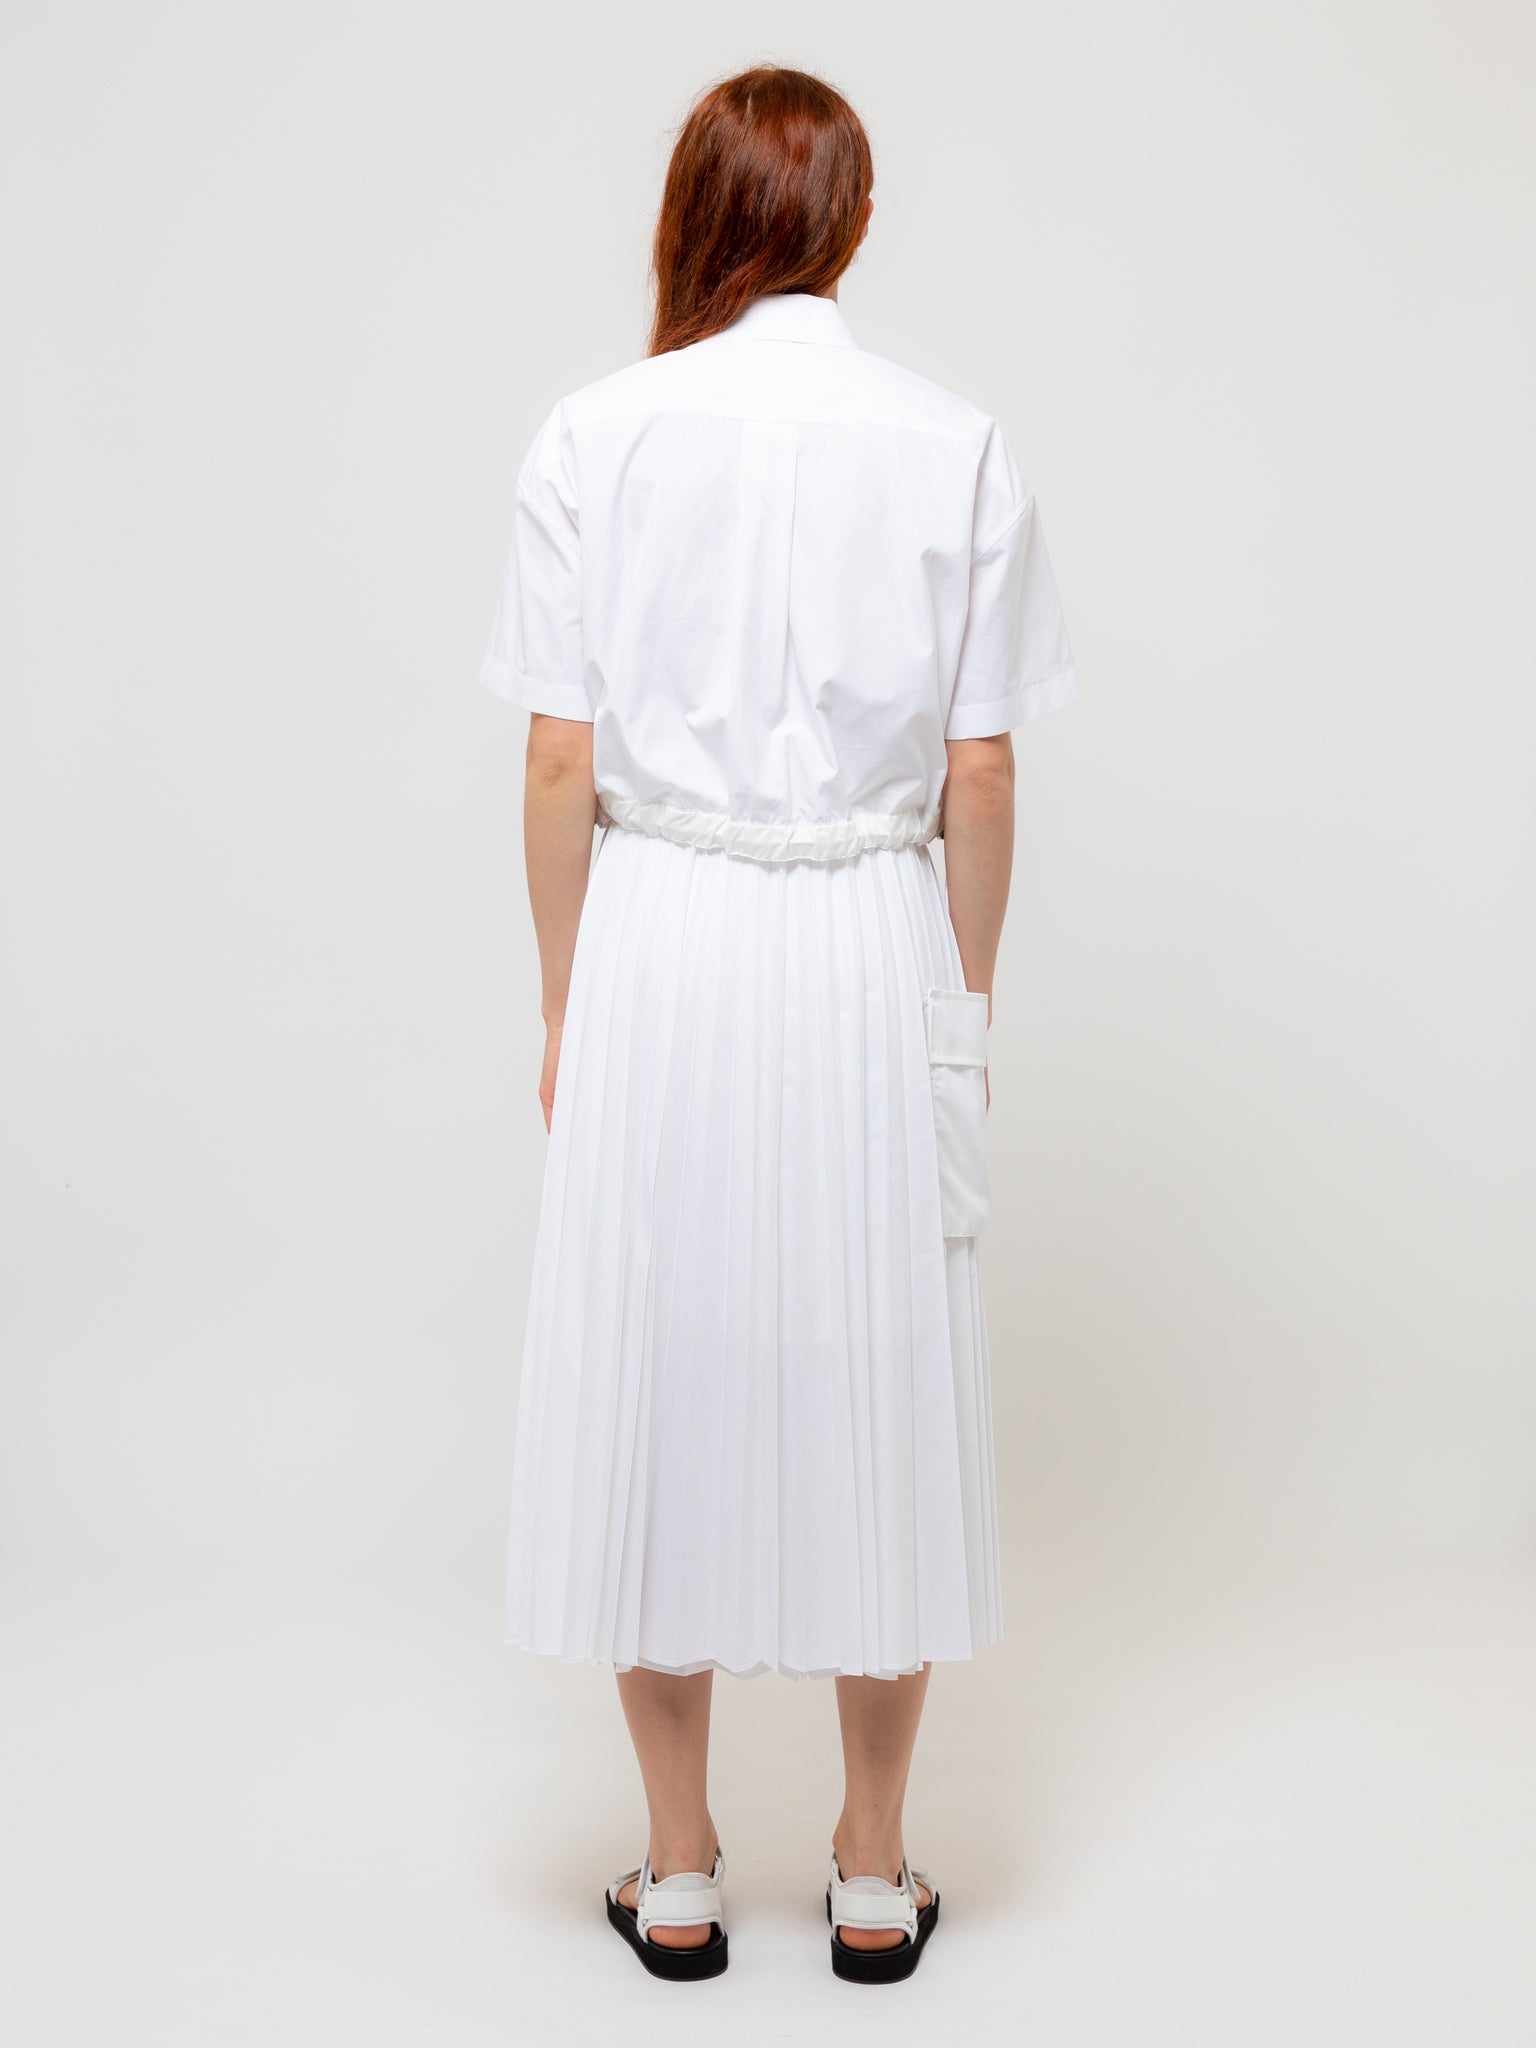 Thomas Mason x Cotton Poplin Skirt Off White